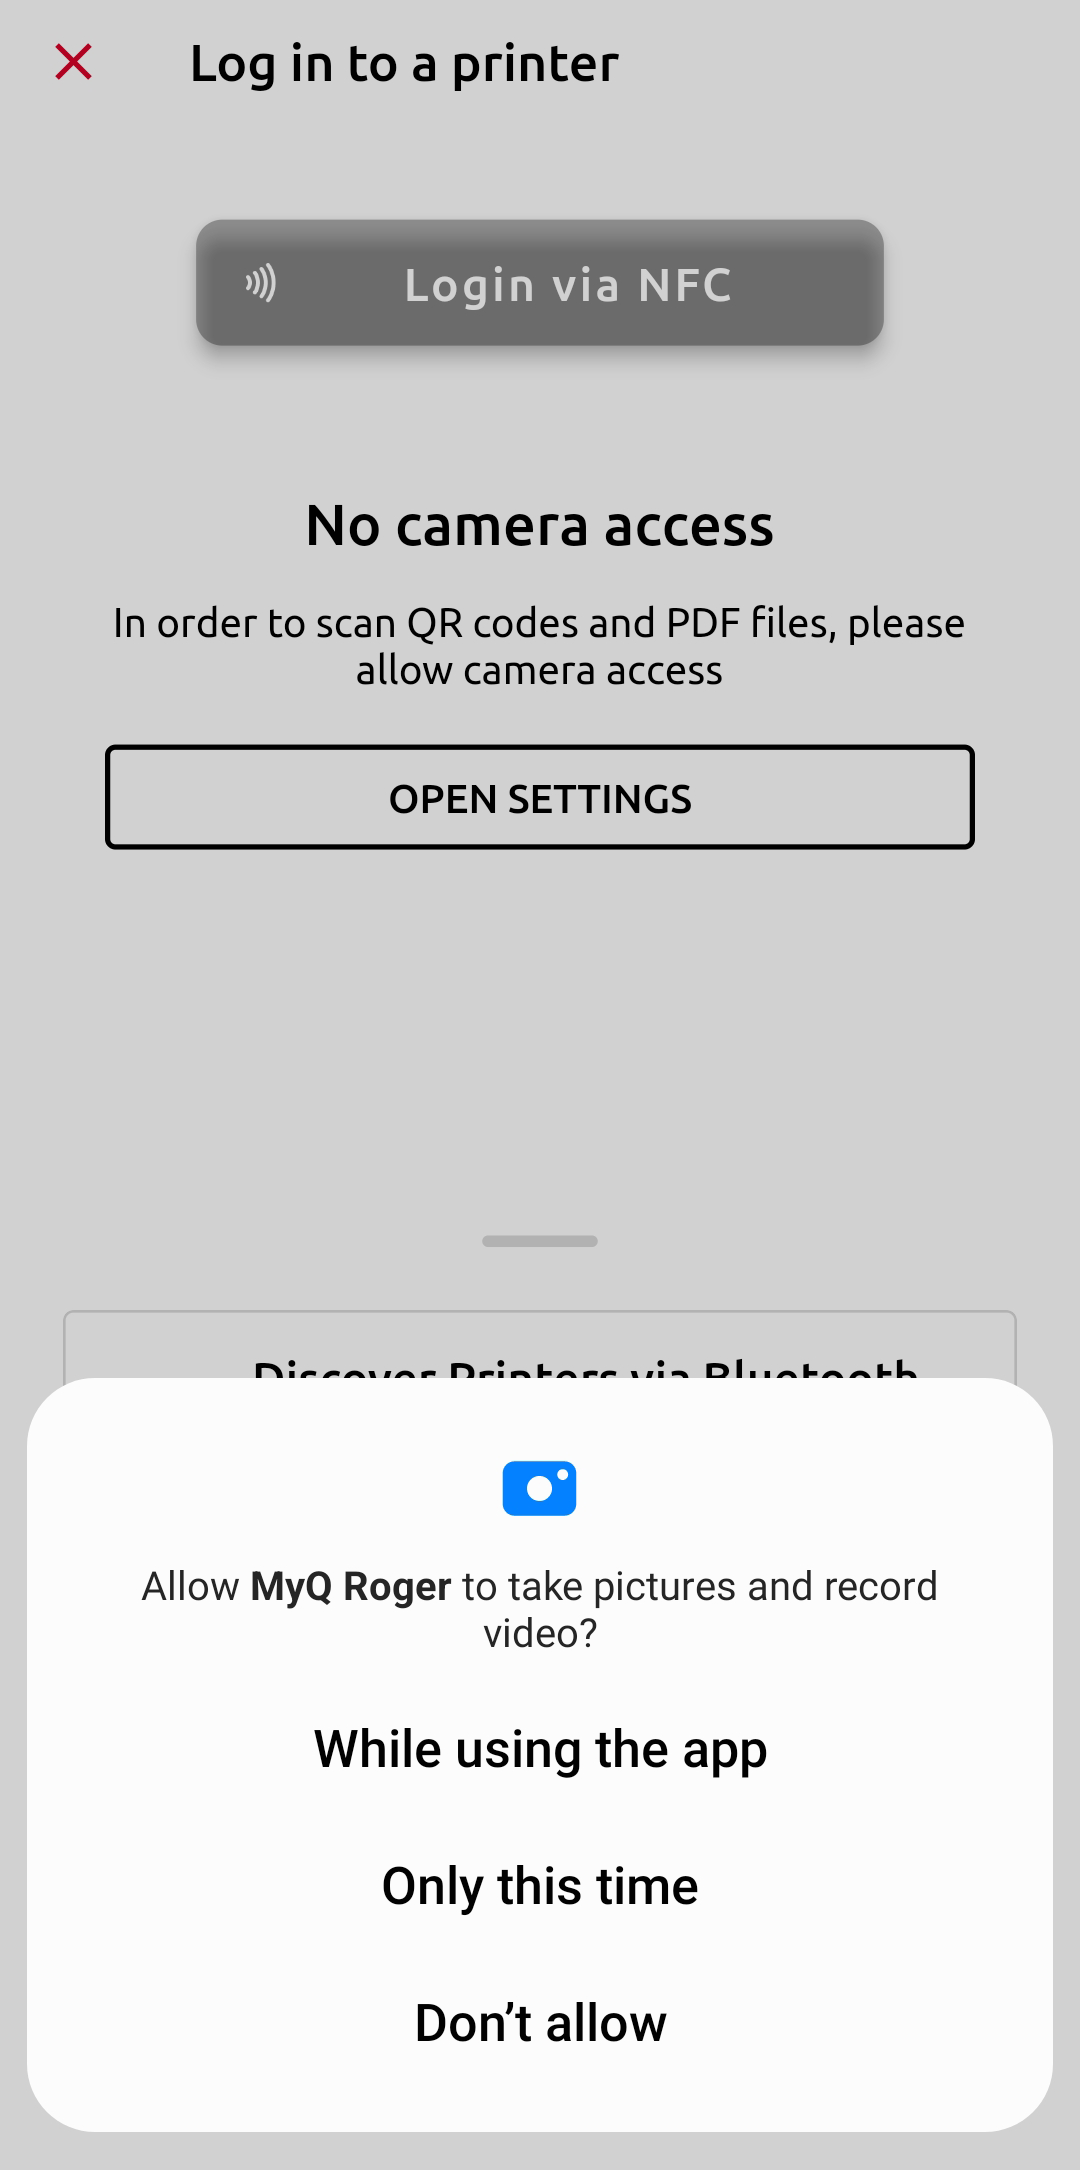 No login - no camera access warning